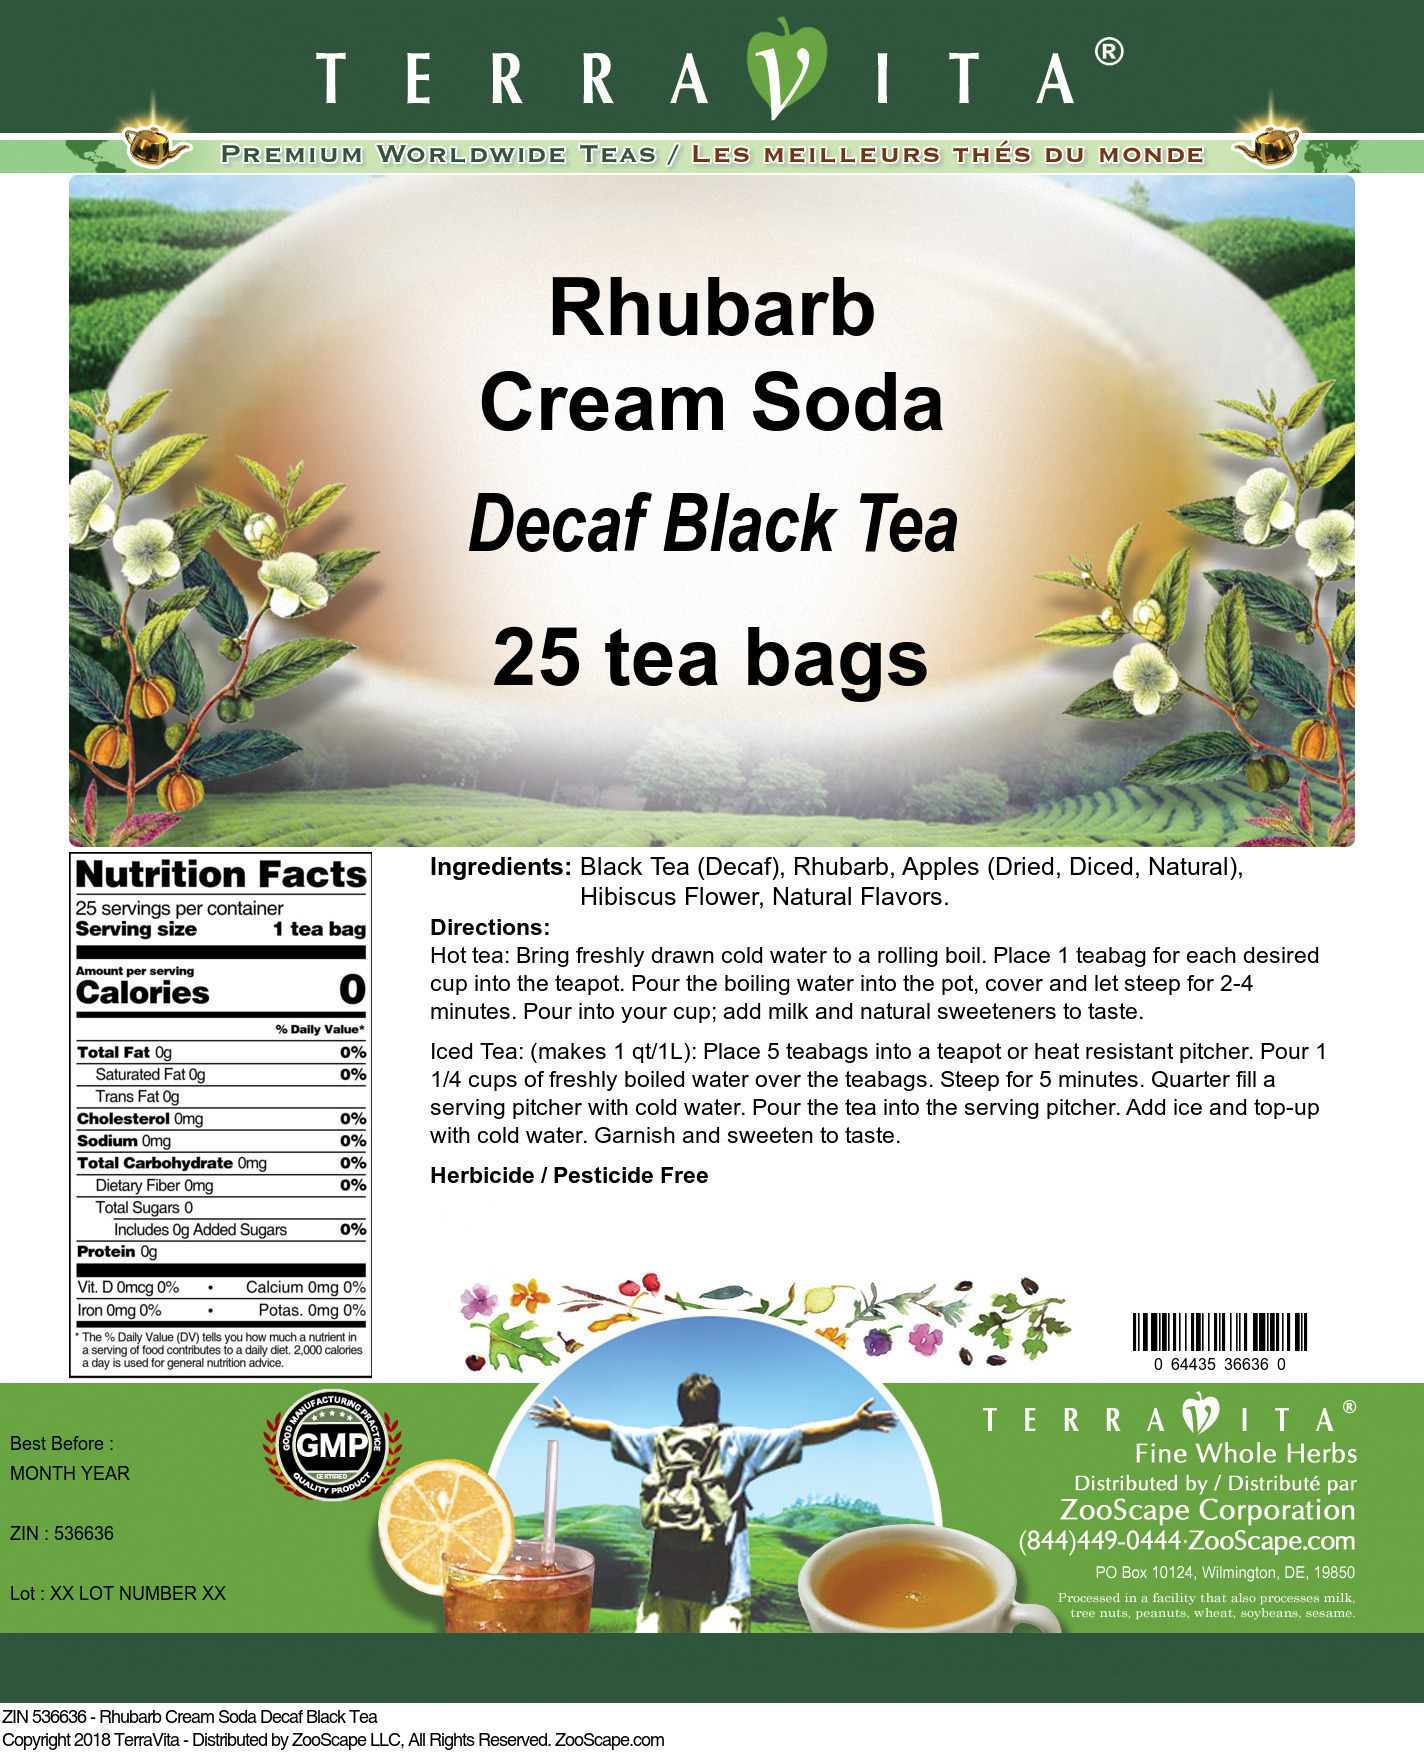 Rhubarb Cream Soda Decaf Black Tea - Label